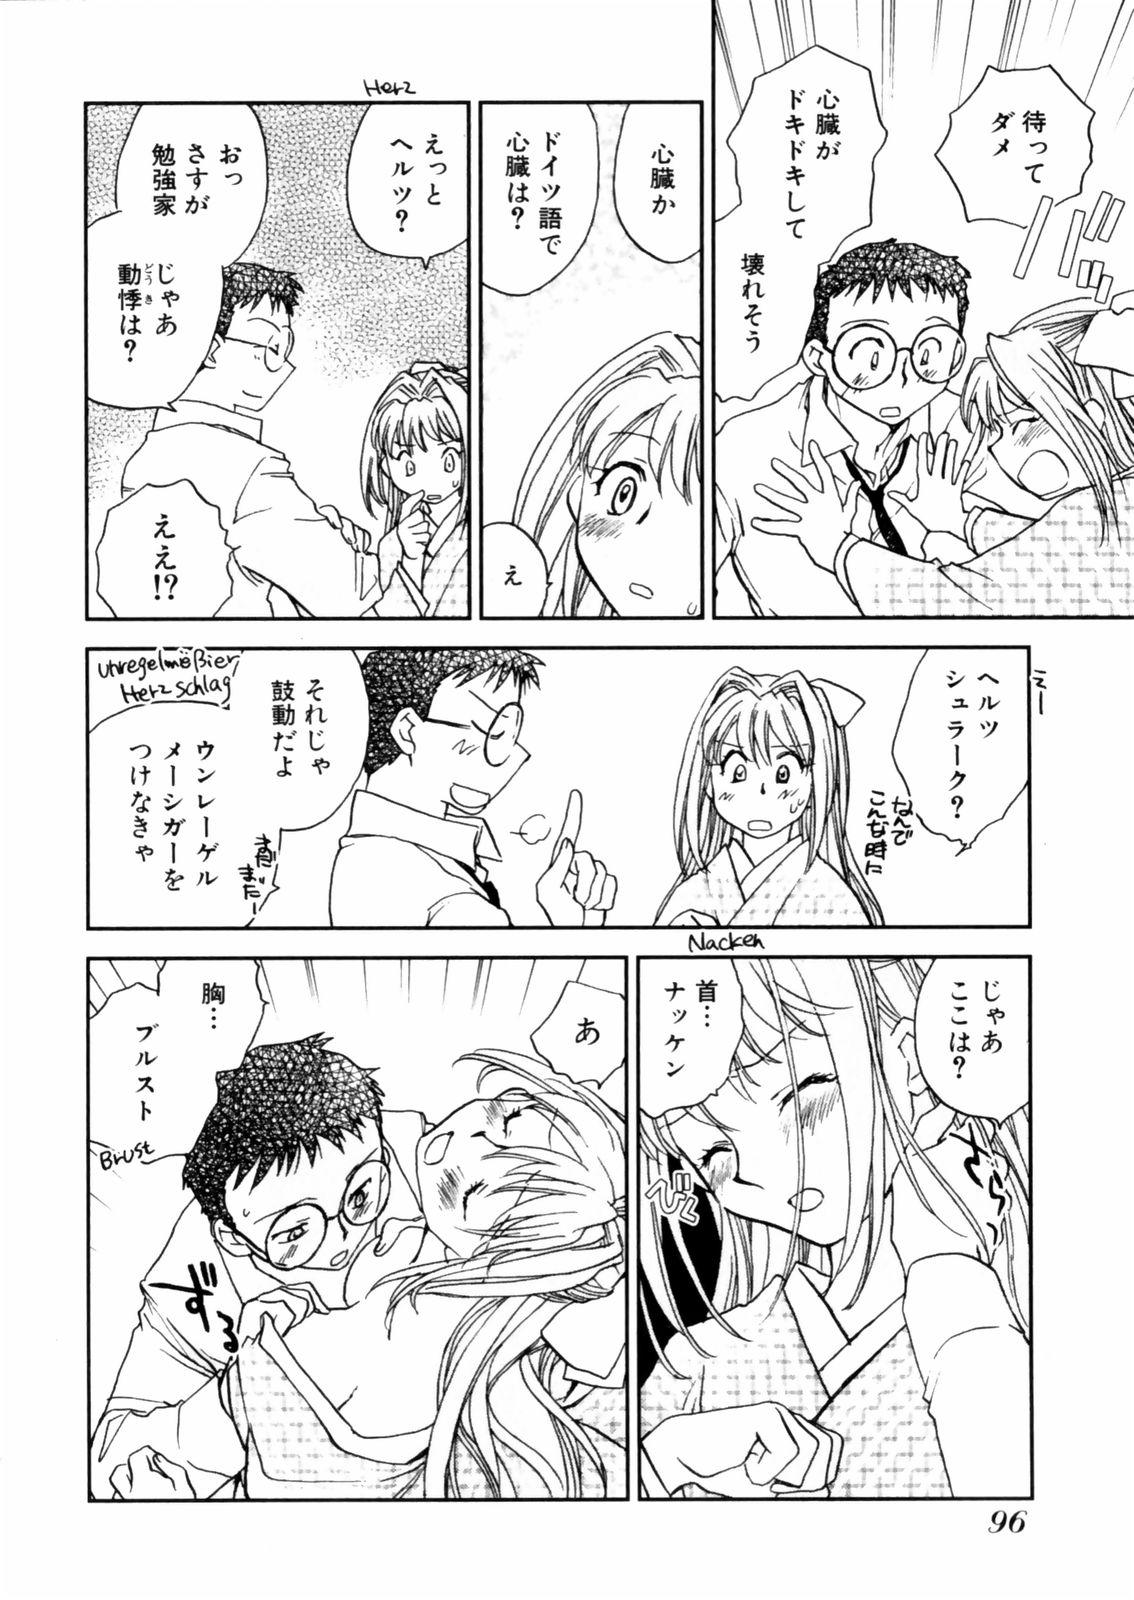 [Okano Ahiru] Hanasake ! Otome Juku (Otome Private Tutoring School) Vol.2 97